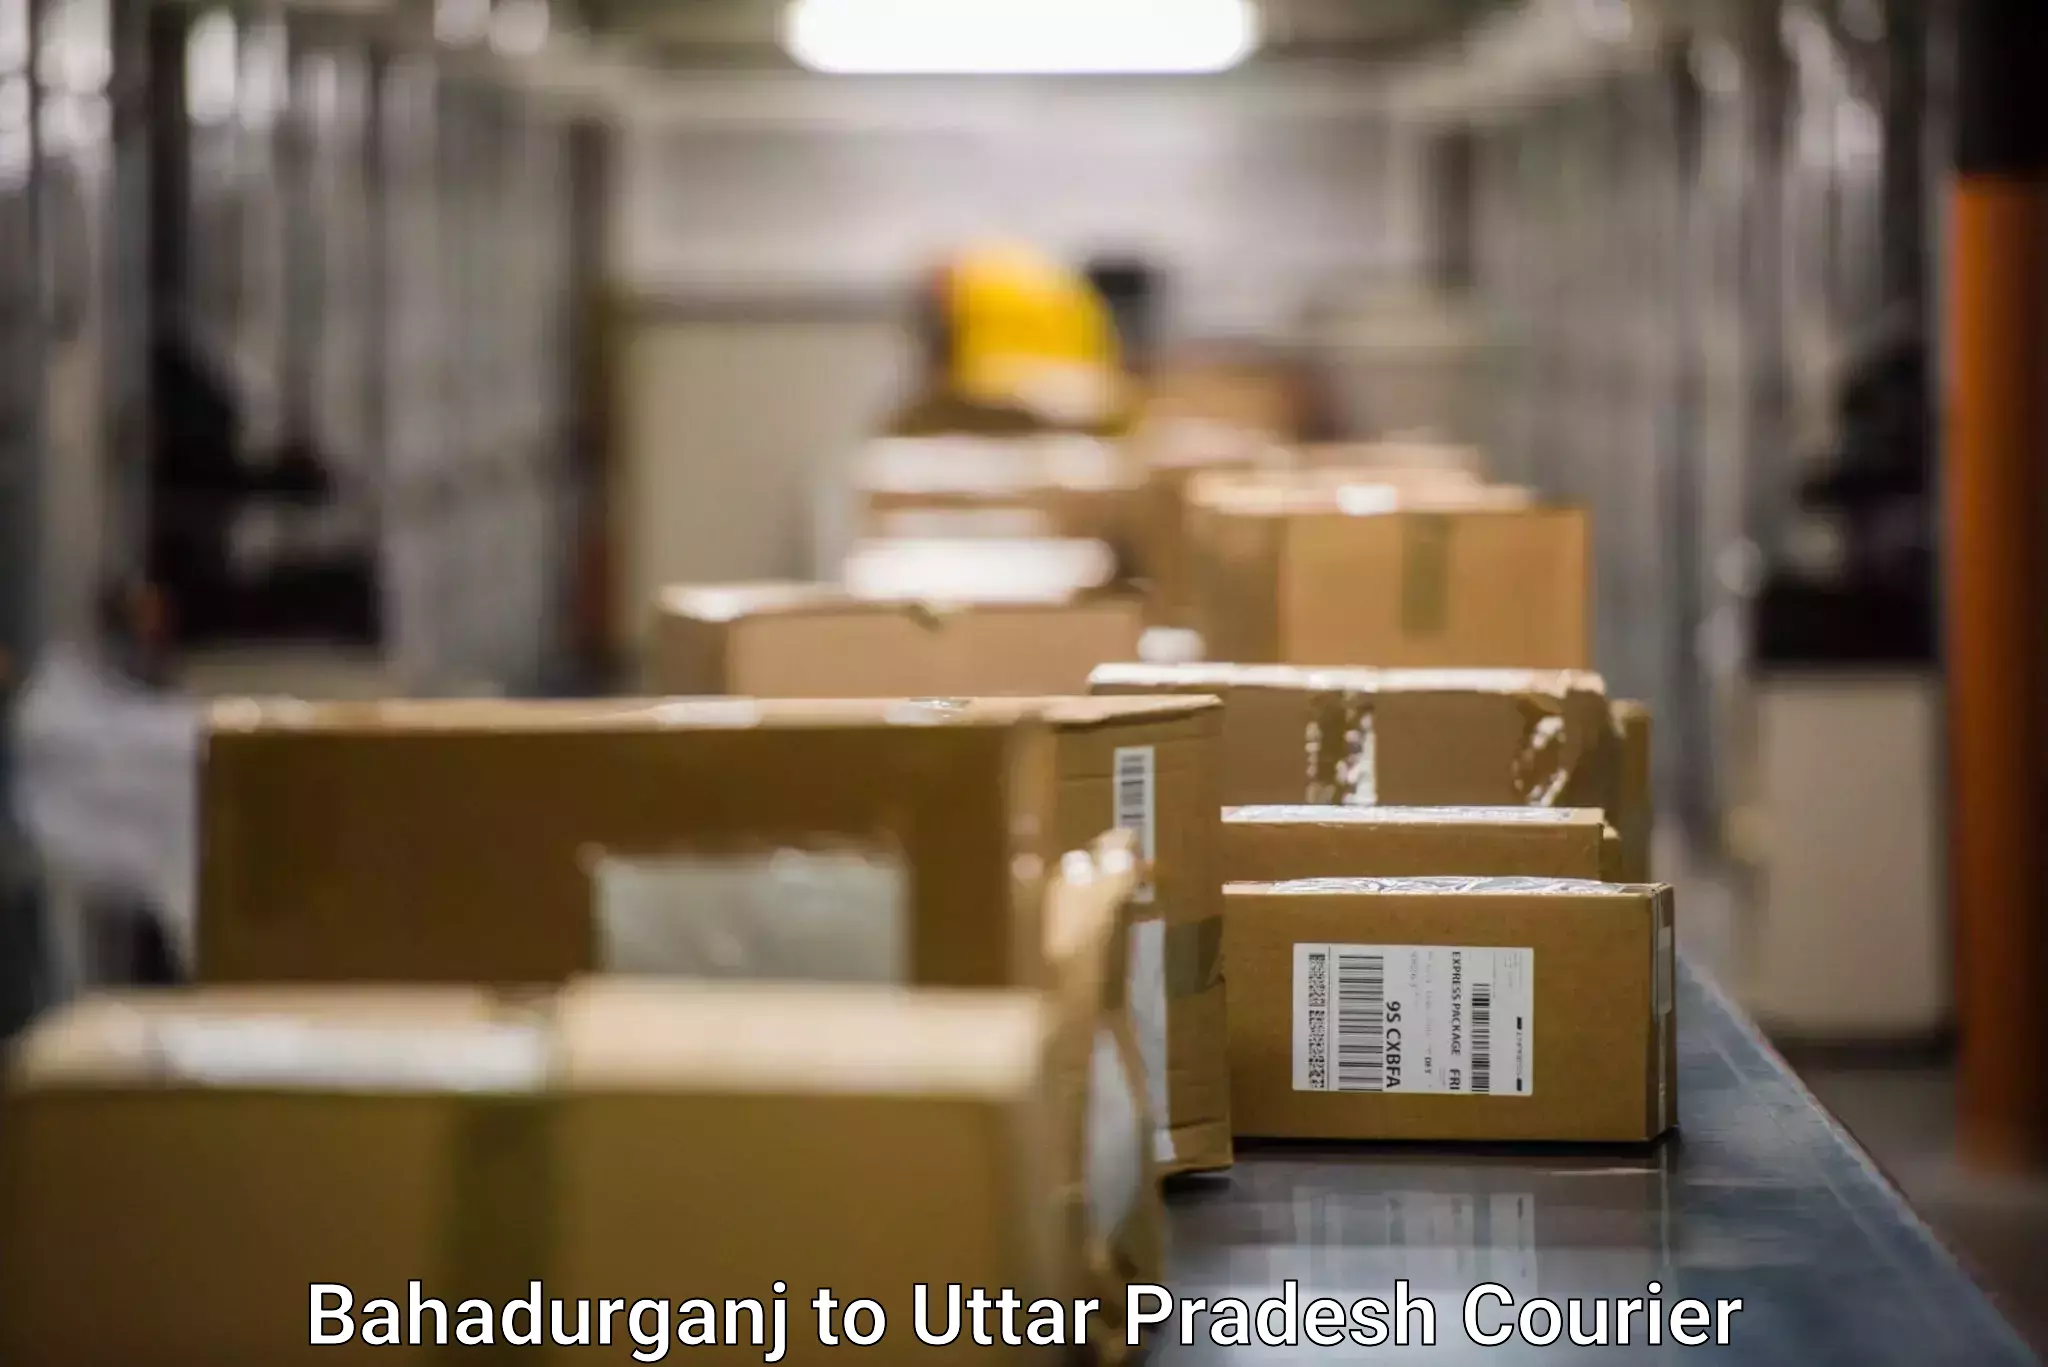 Tech-enabled shipping Bahadurganj to Uttar Pradesh